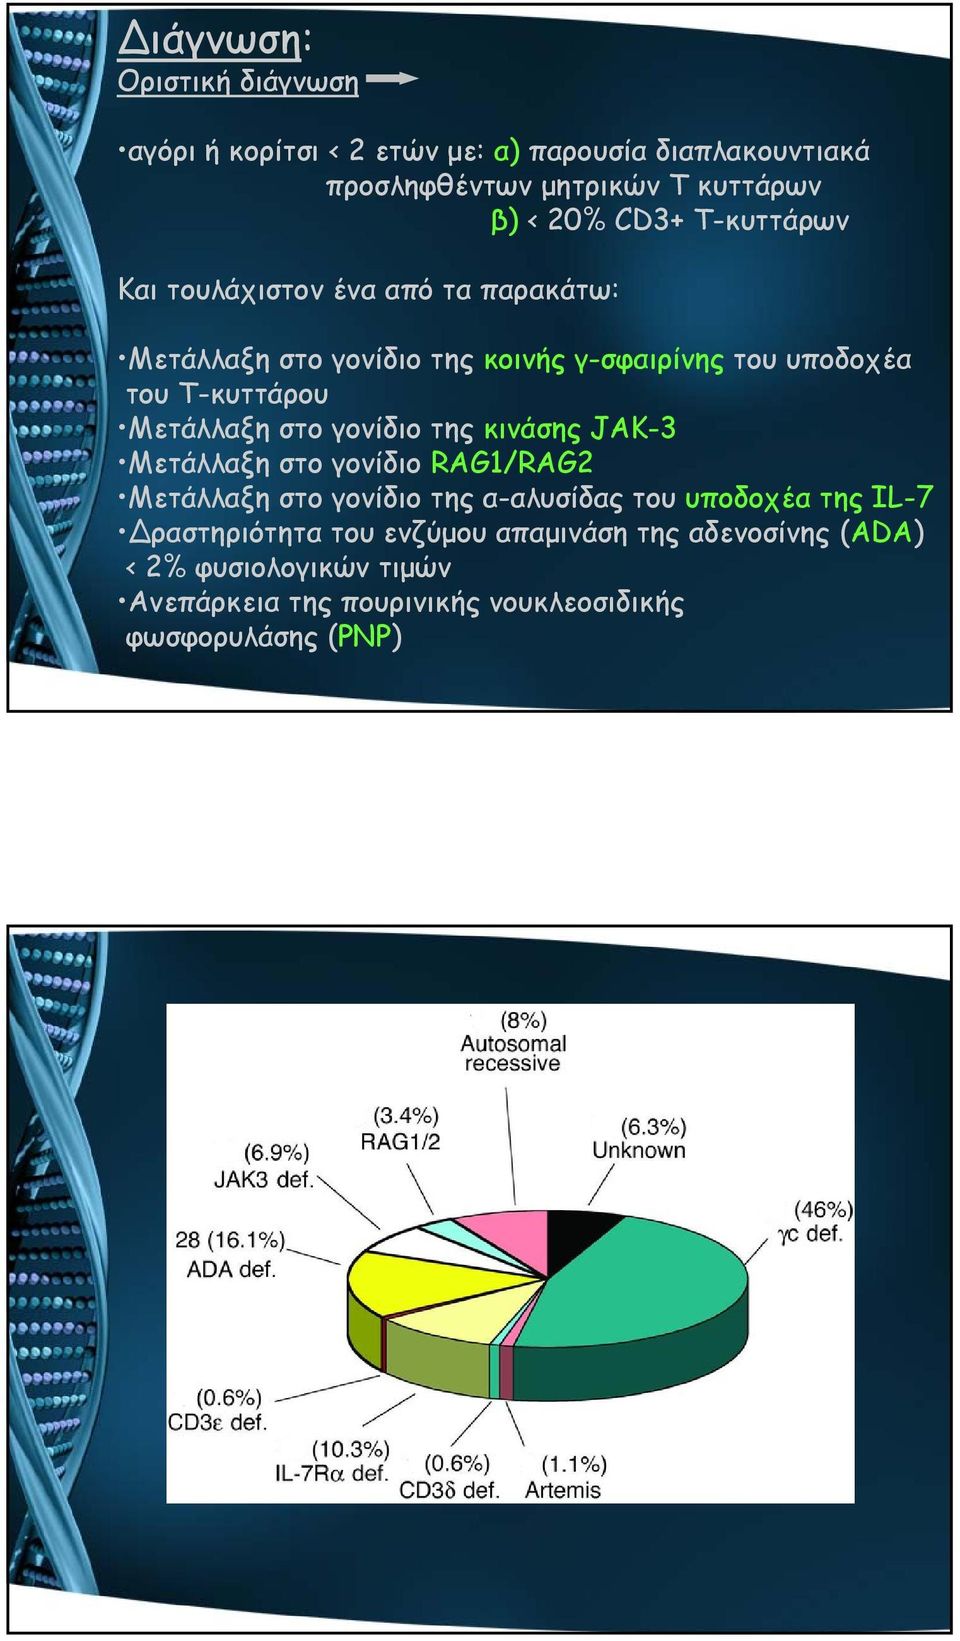 Μετάλλαξη στο γονίδιο της κινάσης JAK-3 Μετάλλαξη στο γονίδιο RAG1/RAG2 Μετάλλαξη στο γονίδιο της α-αλυσίδας του υποδοχέα της IL-7